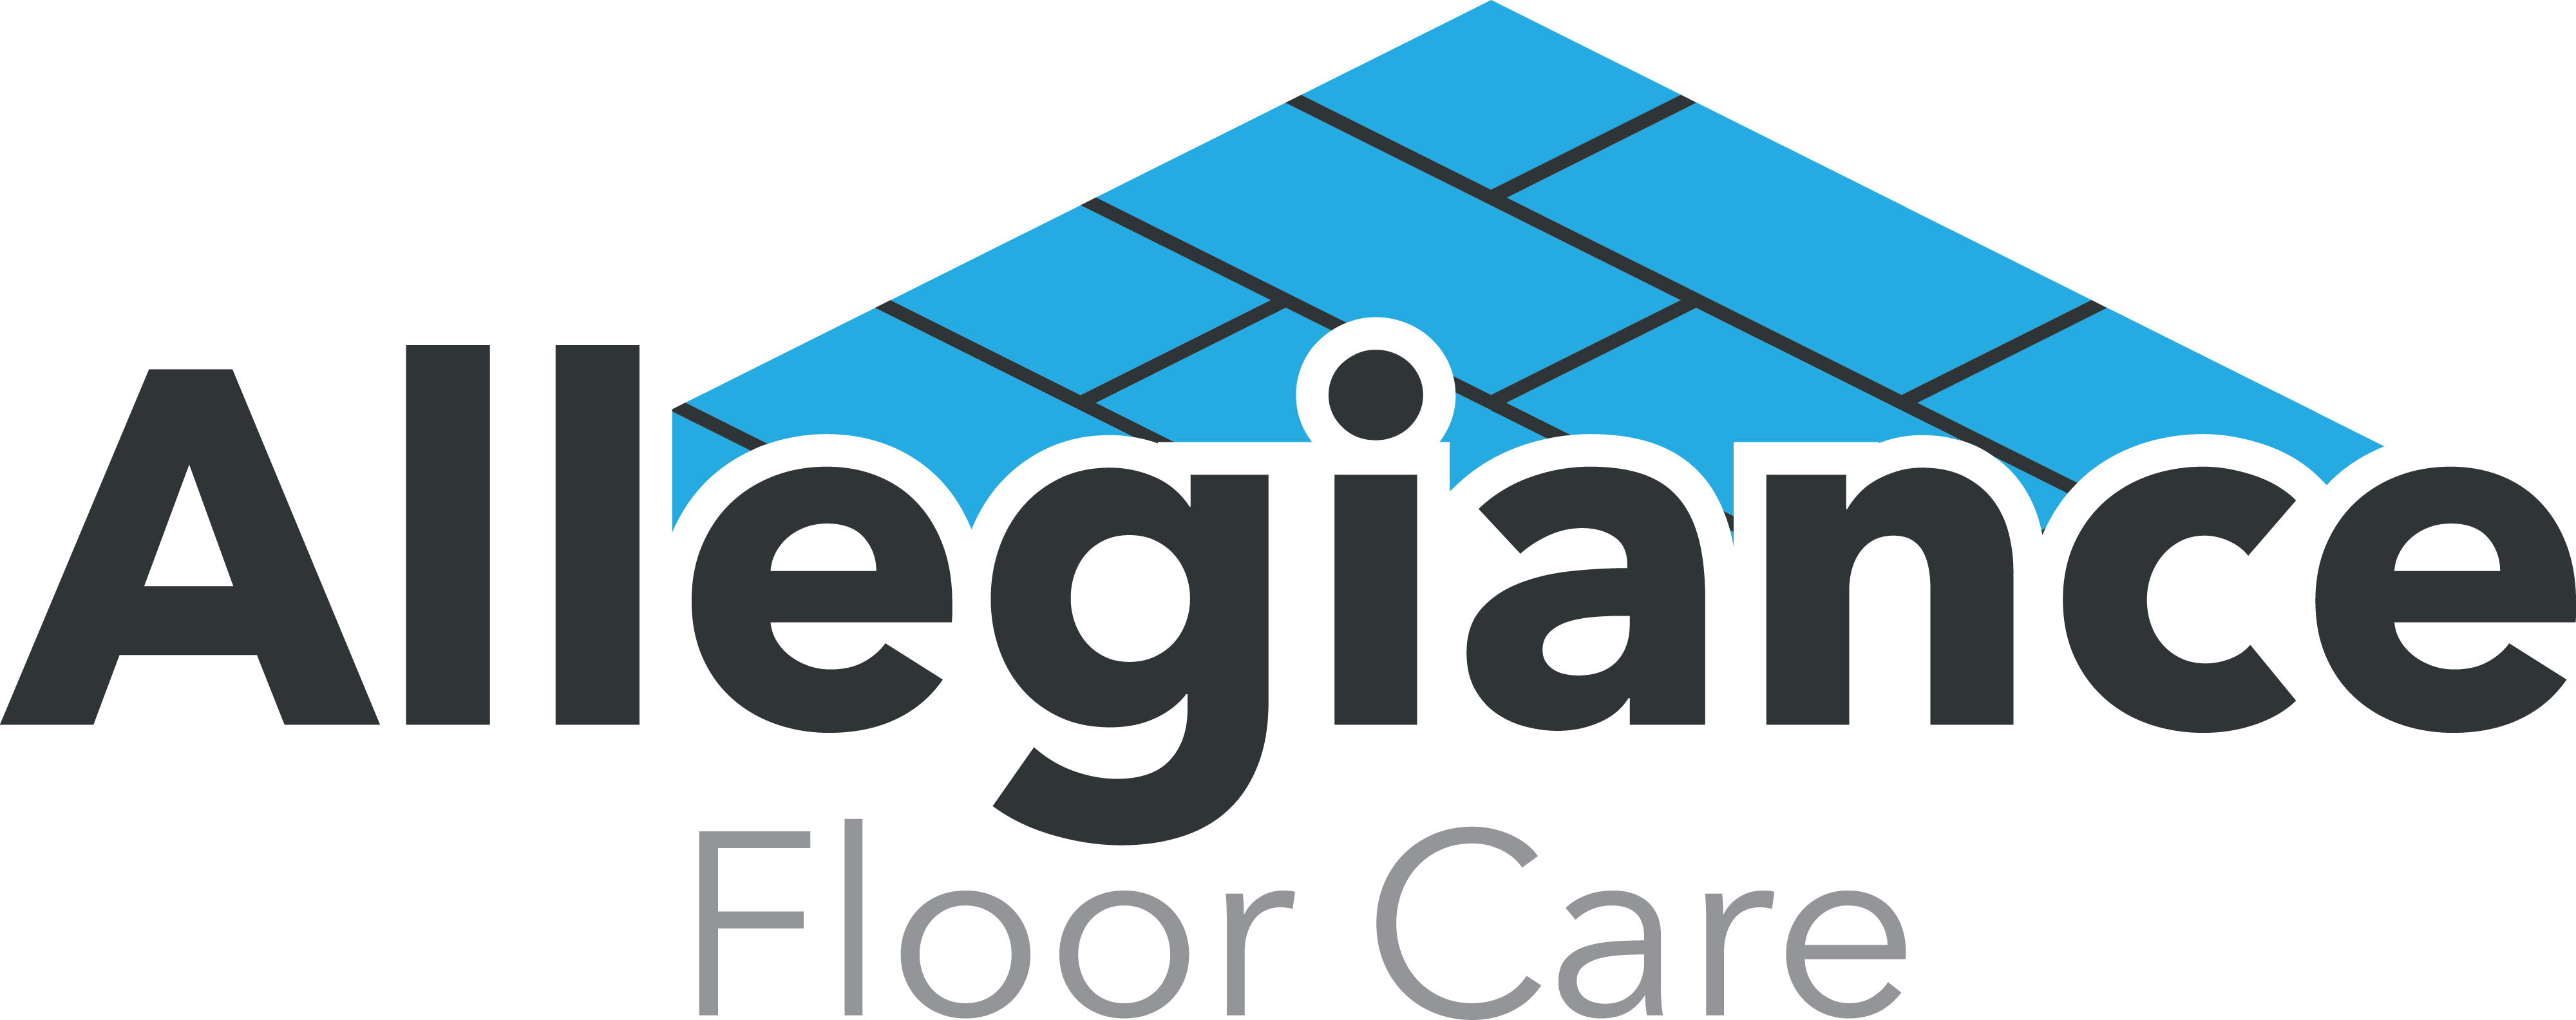 Allegiance Floor Care